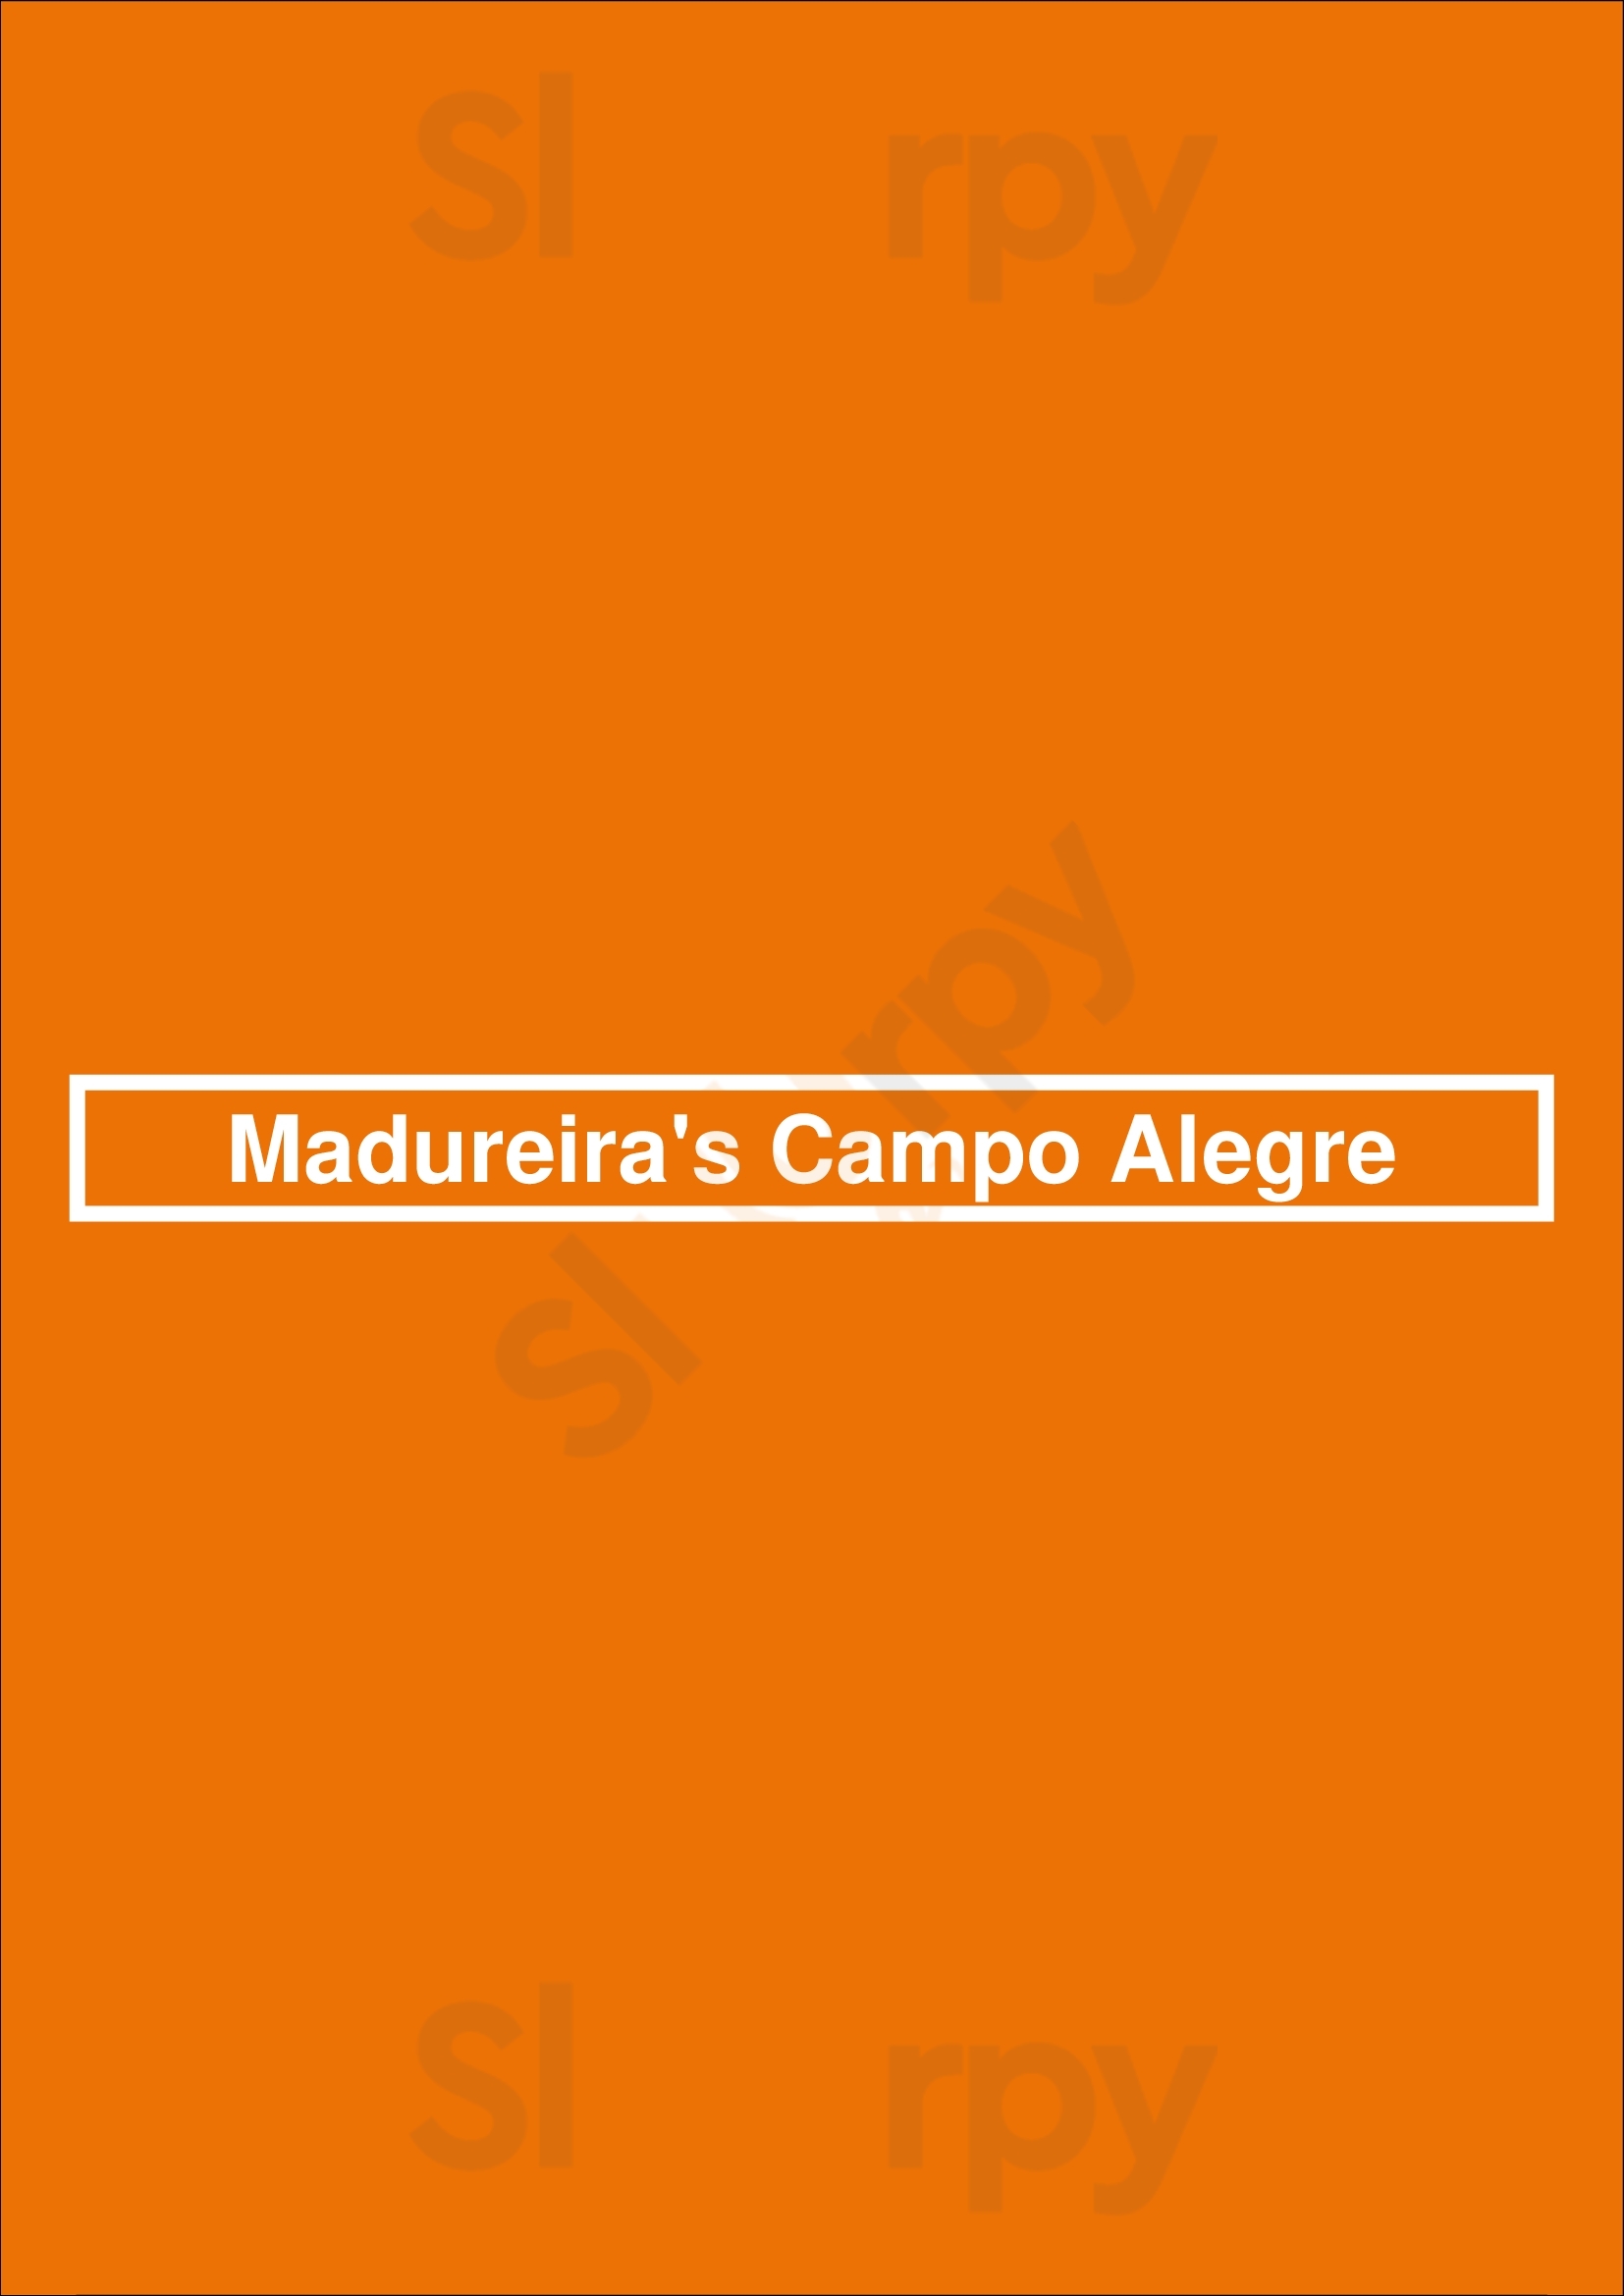 Madureira's Campo Alegre Porto Menu - 1